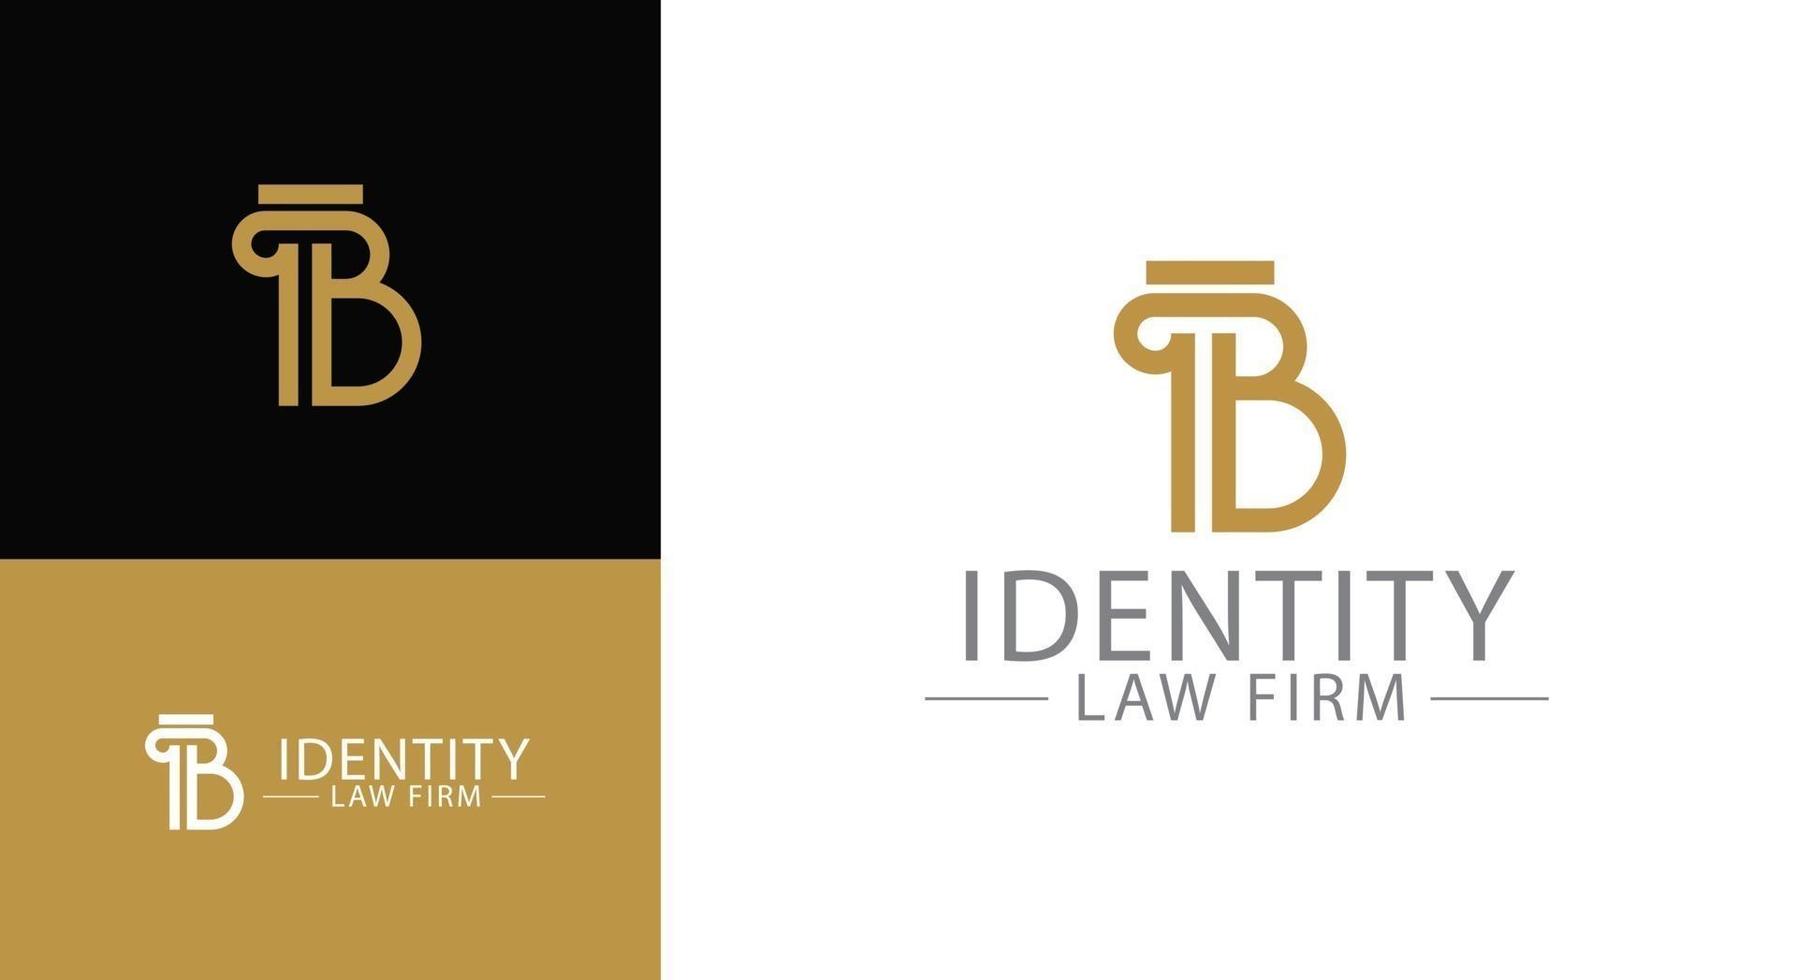 création de logo de lettre b de colonne grecque de vecteur pour l'identité d'entreprise d'avocat